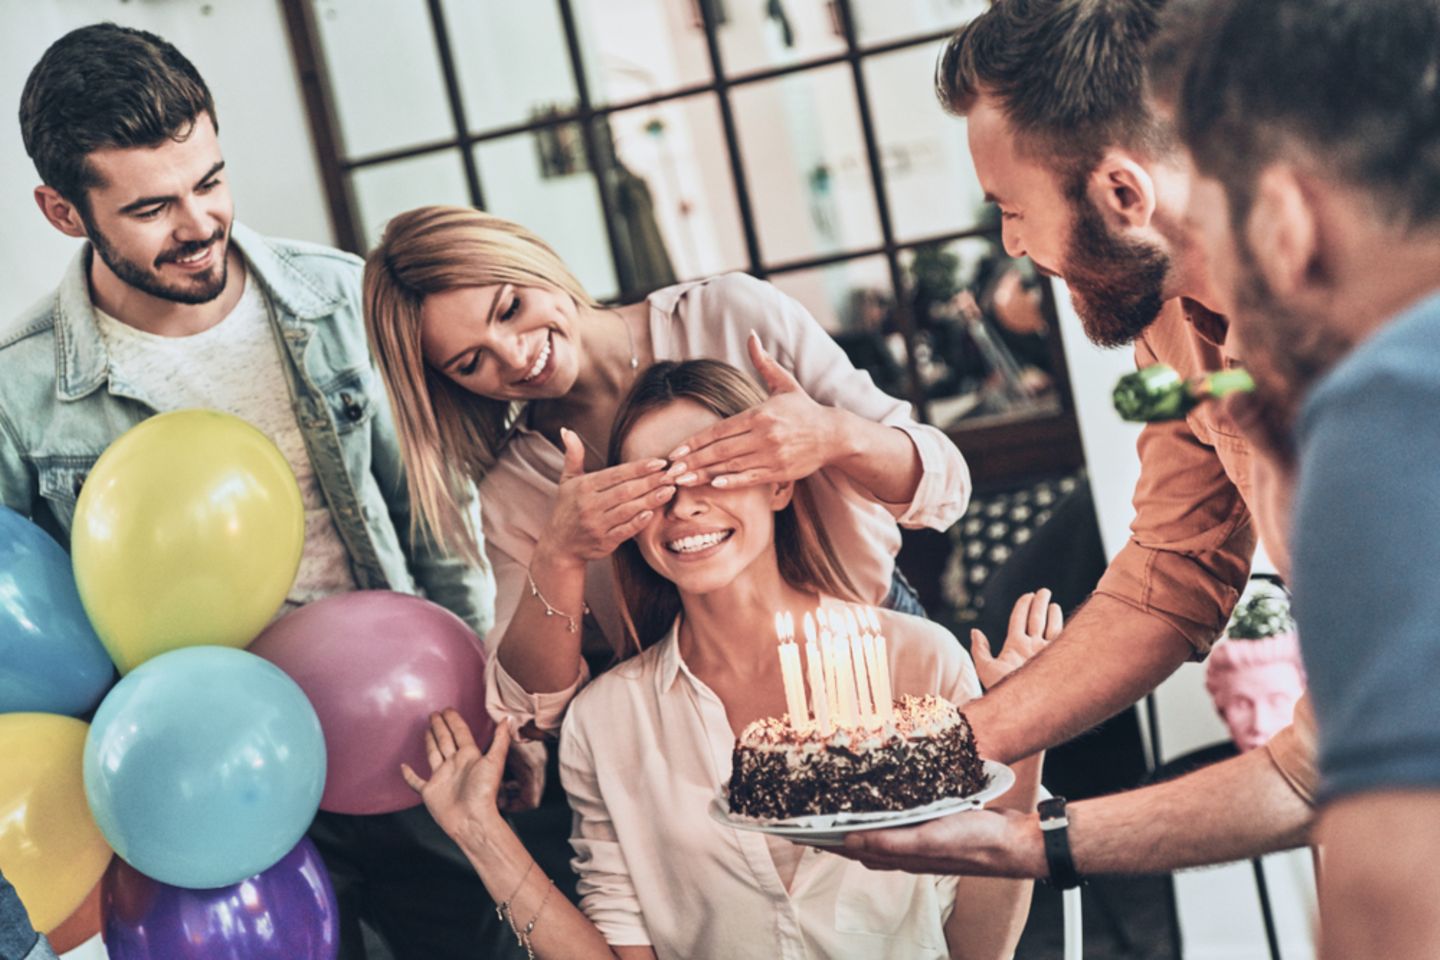 Überraschungsparty: Tipps, wie der Plan aufgeht! Frau werden die Augen zugehalten, vor ihr eine Geburtstagstorte mit Kerzen